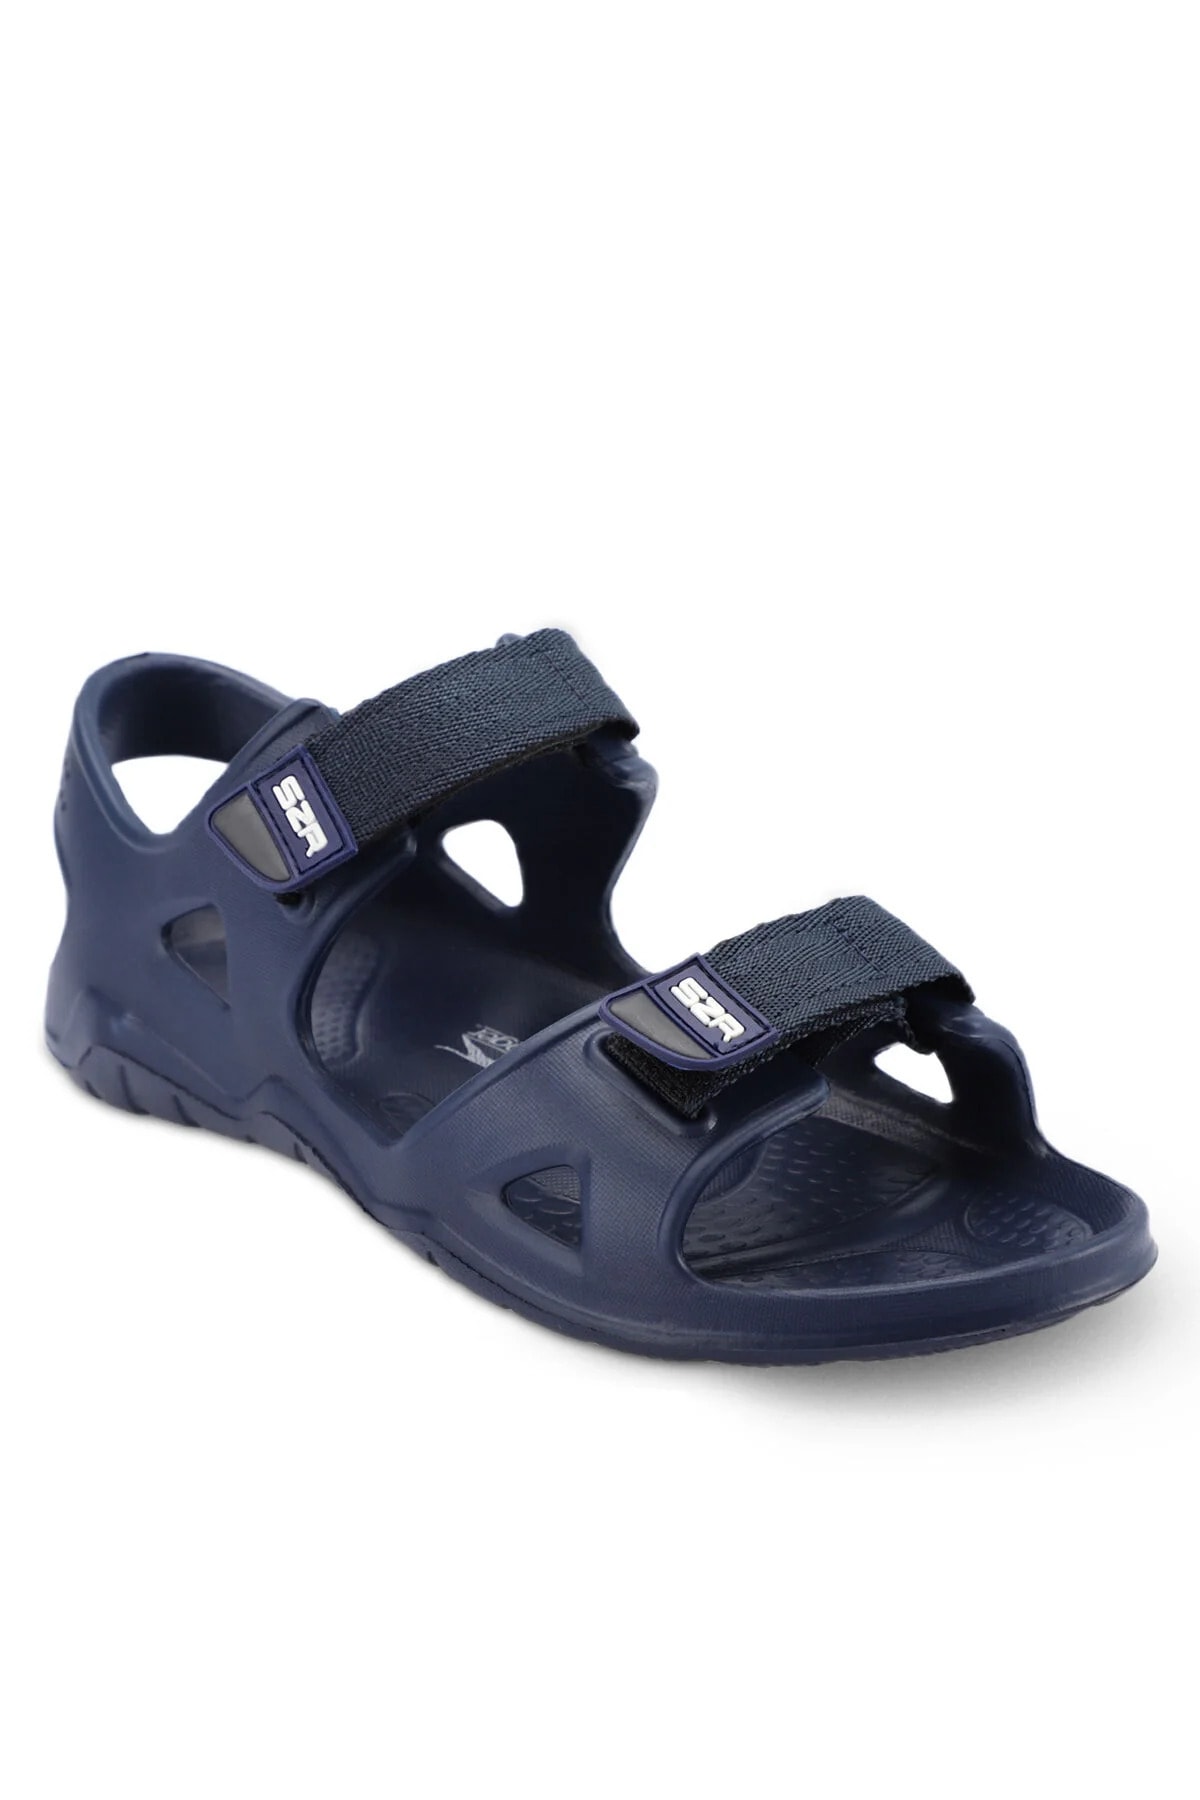 Slazenger Navy Blue Men's Sandals